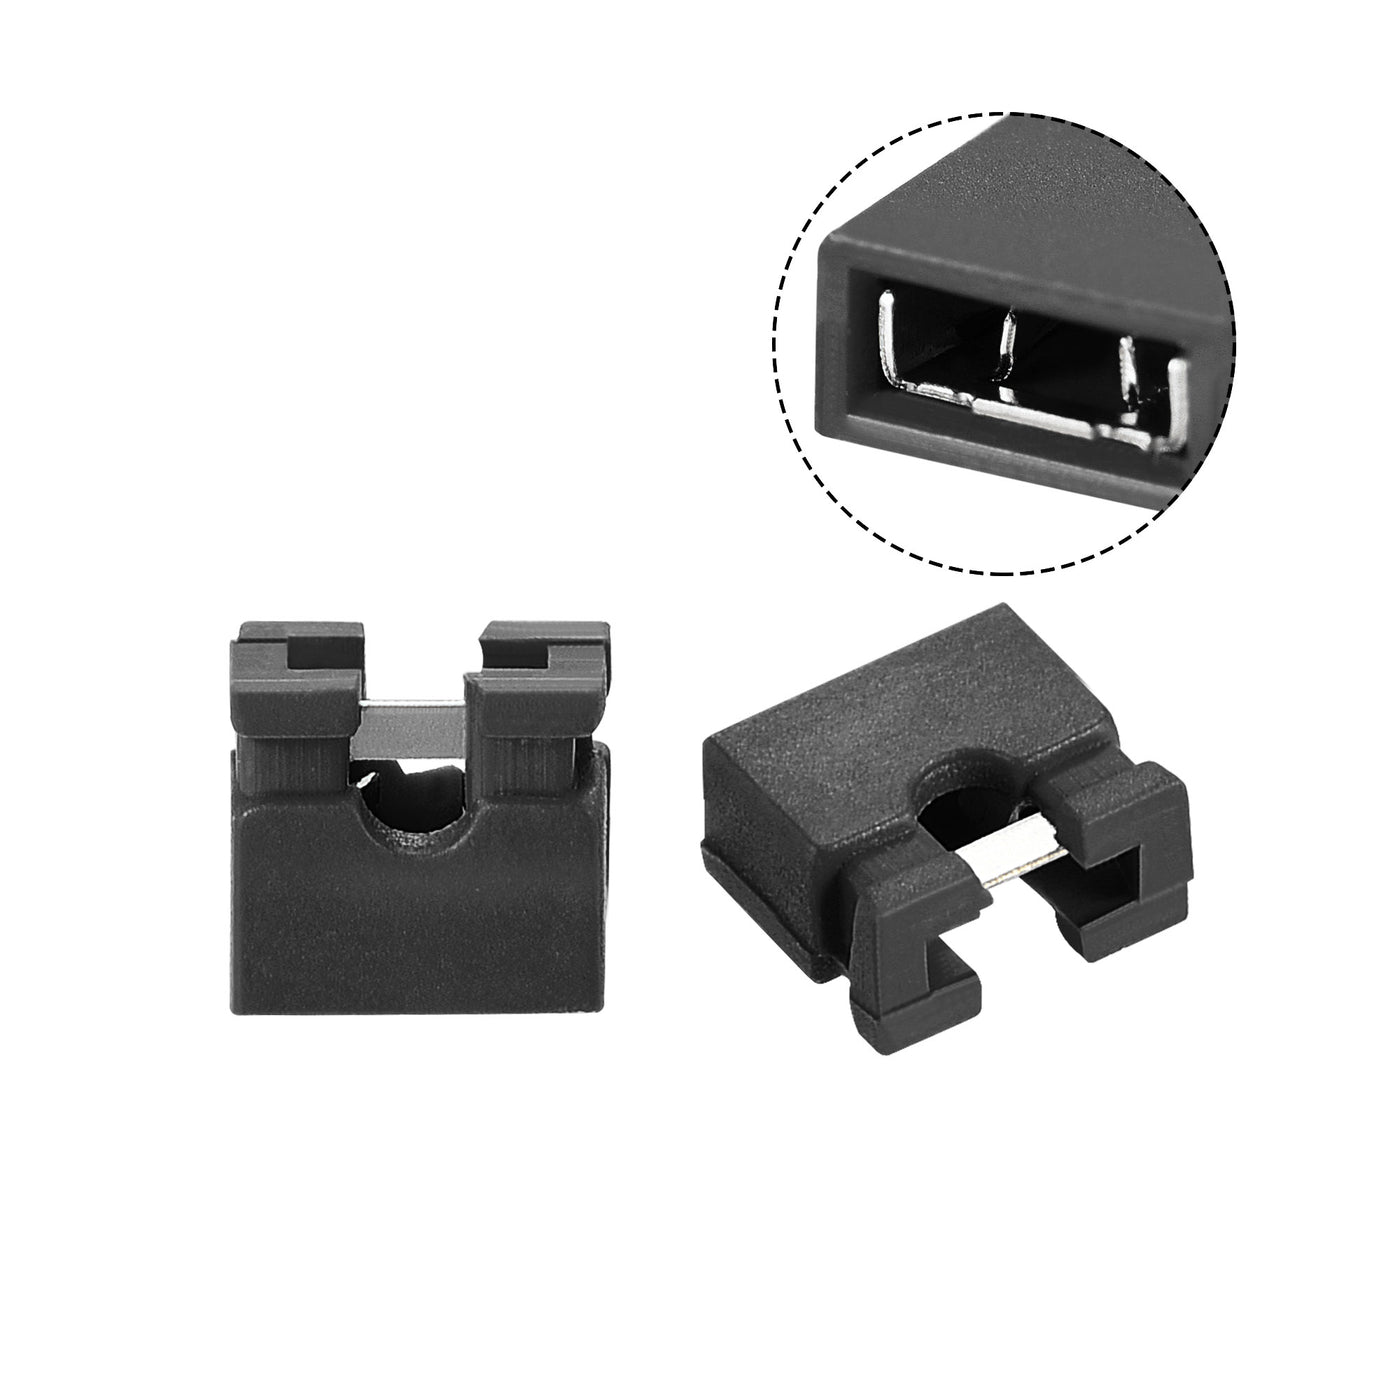 uxcell Uxcell 30pcs 2mm Standard Pin Header Jumper Cap Short Circuit Connection Cap Mini Micro Jumper Bridge Plug Black